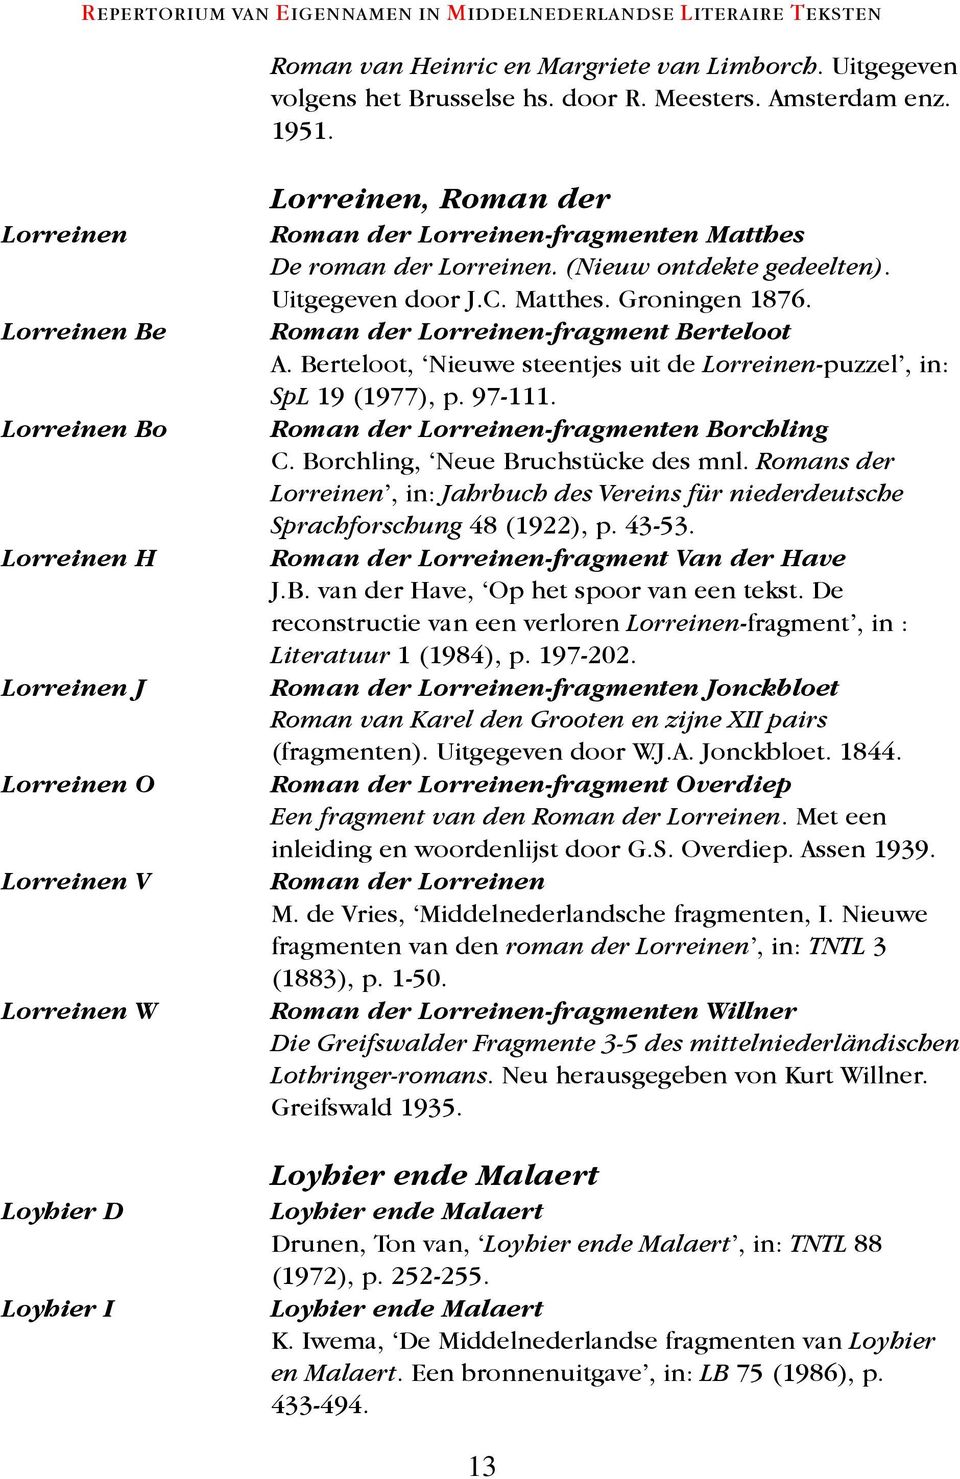 (Nieuw ontdekte gedeelten). Uitgegeven door J.C. Matthes. Groningen 1876. Roman der Lorreinen-fragment Berteloot A. Berteloot, Nieuwe steentjes uit de Lorreinen-puzzel, in: SpL 19 (1977), p. 97-111.